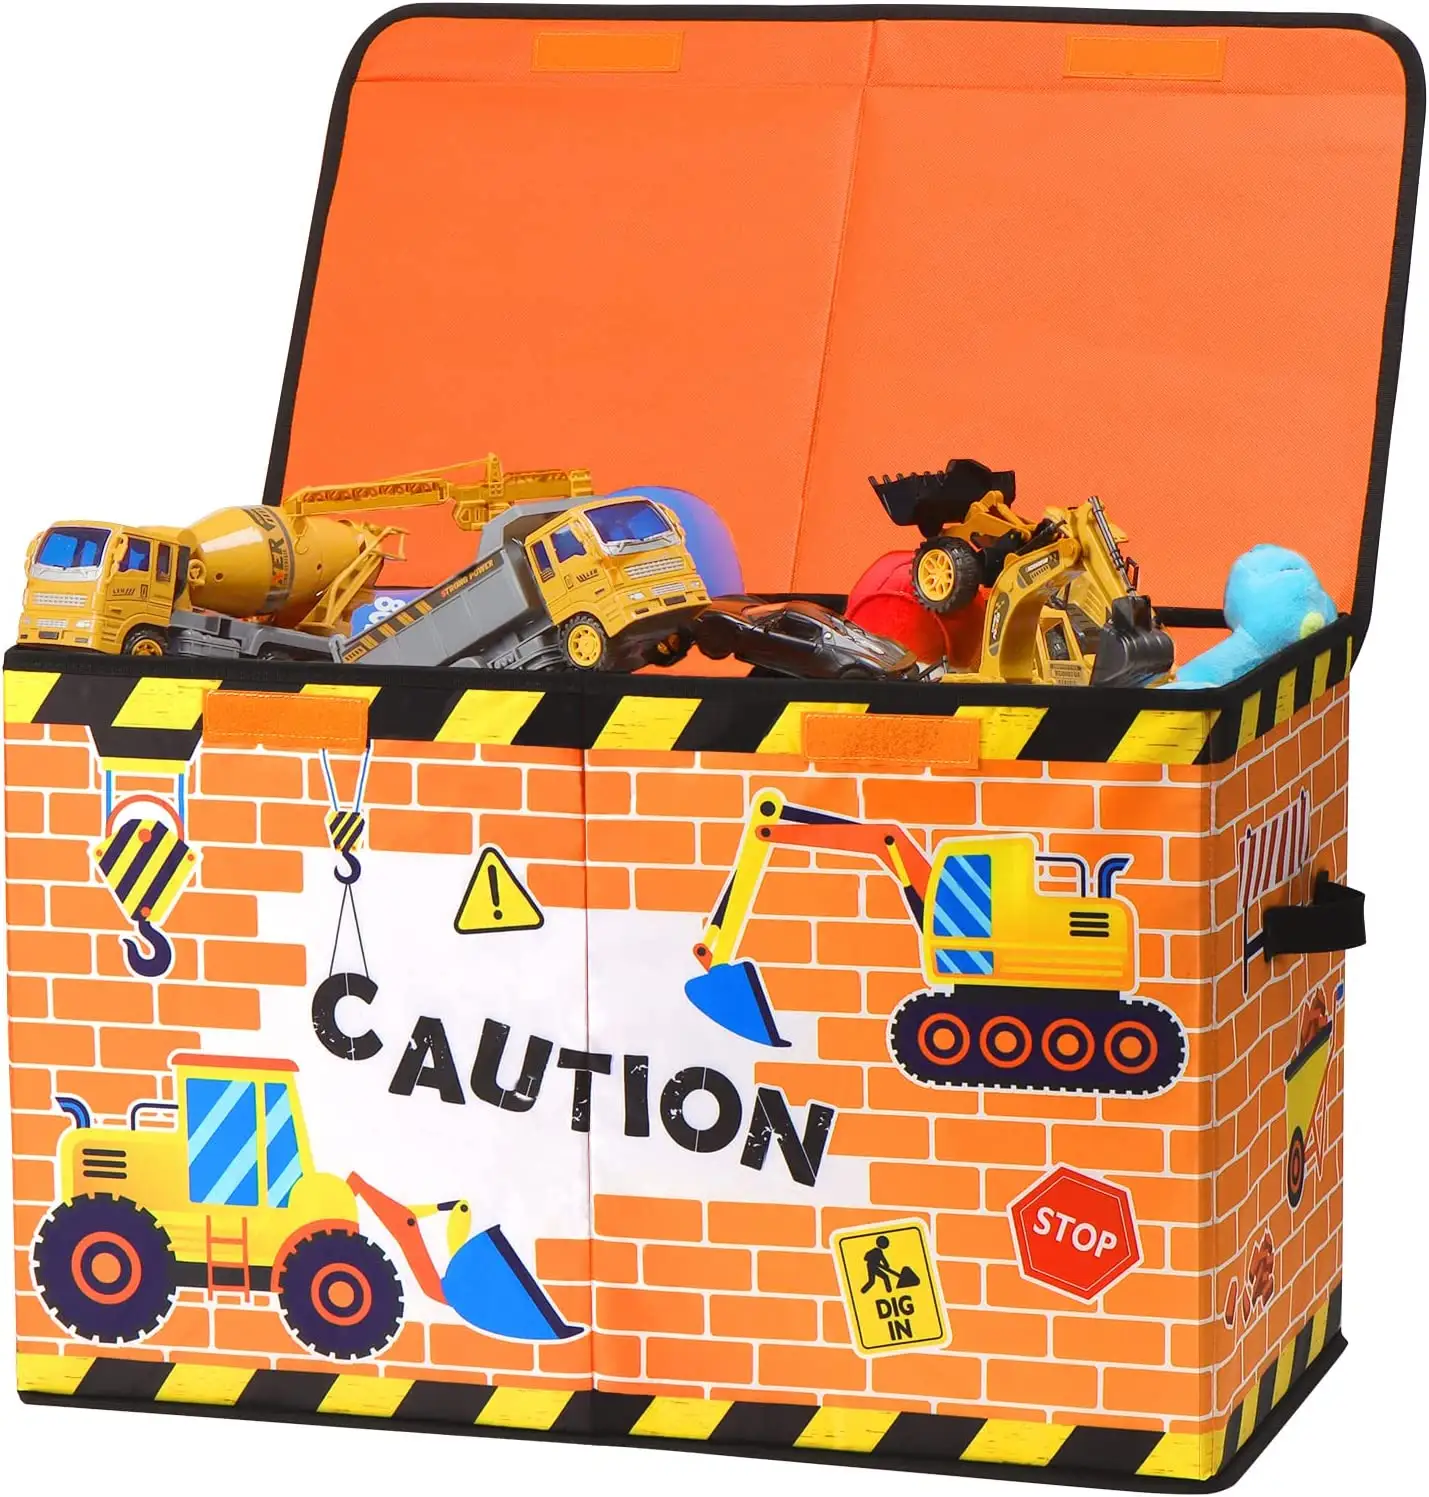 Benutzer definierte zusammen klappbare leichte Spielzeug kiste LKW Kinder Spielzeug kiste Aufbewahrung sbox für Spielzeug Kleidung Kleinigkeiten mit Deckel